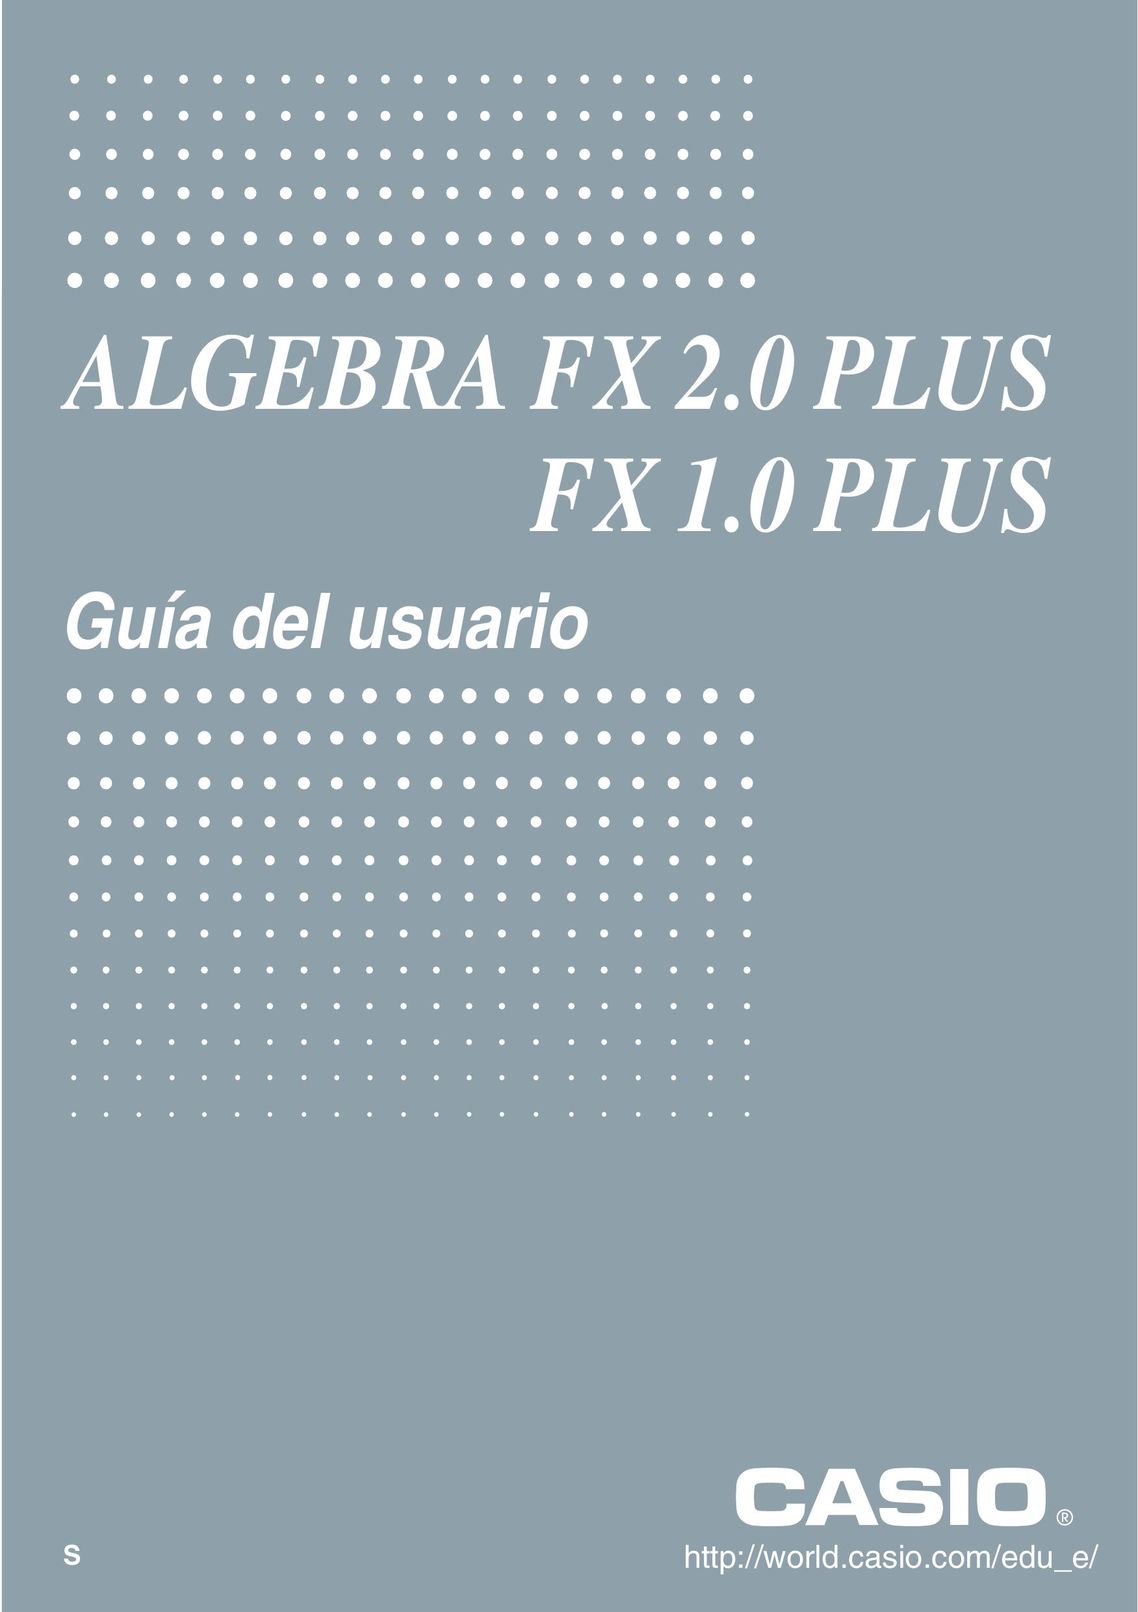 Casio FX 1.0 Calculator User Manual